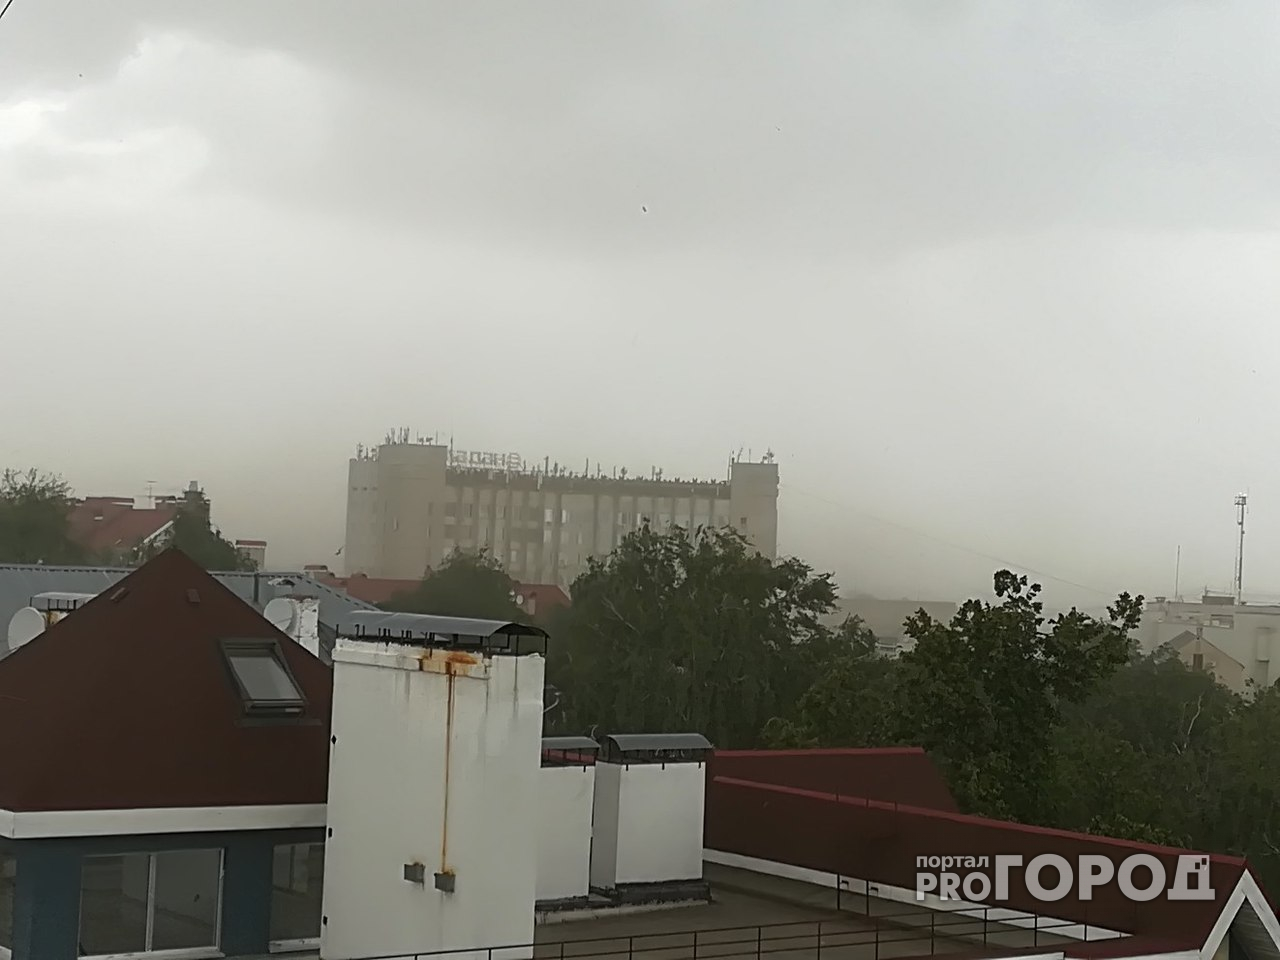 Прогноз погоды на пятницу: придет ли тепло в Нижний Новгород?